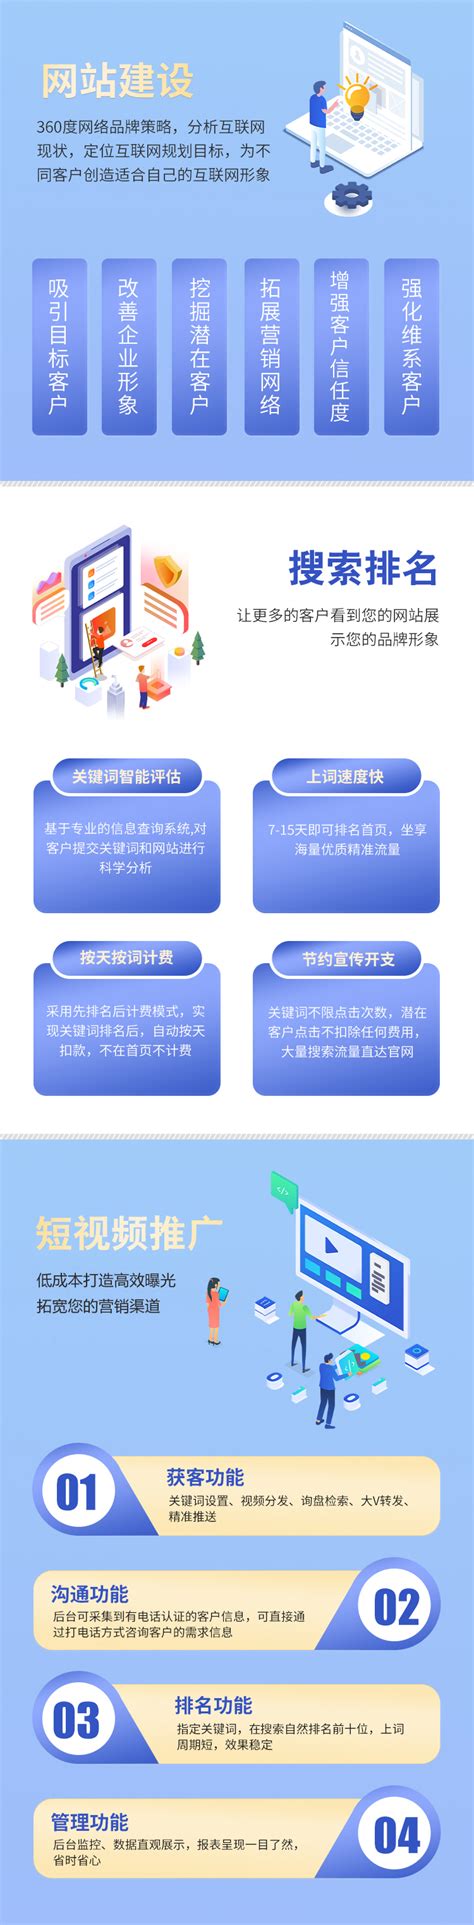 重庆网站开发建设工作